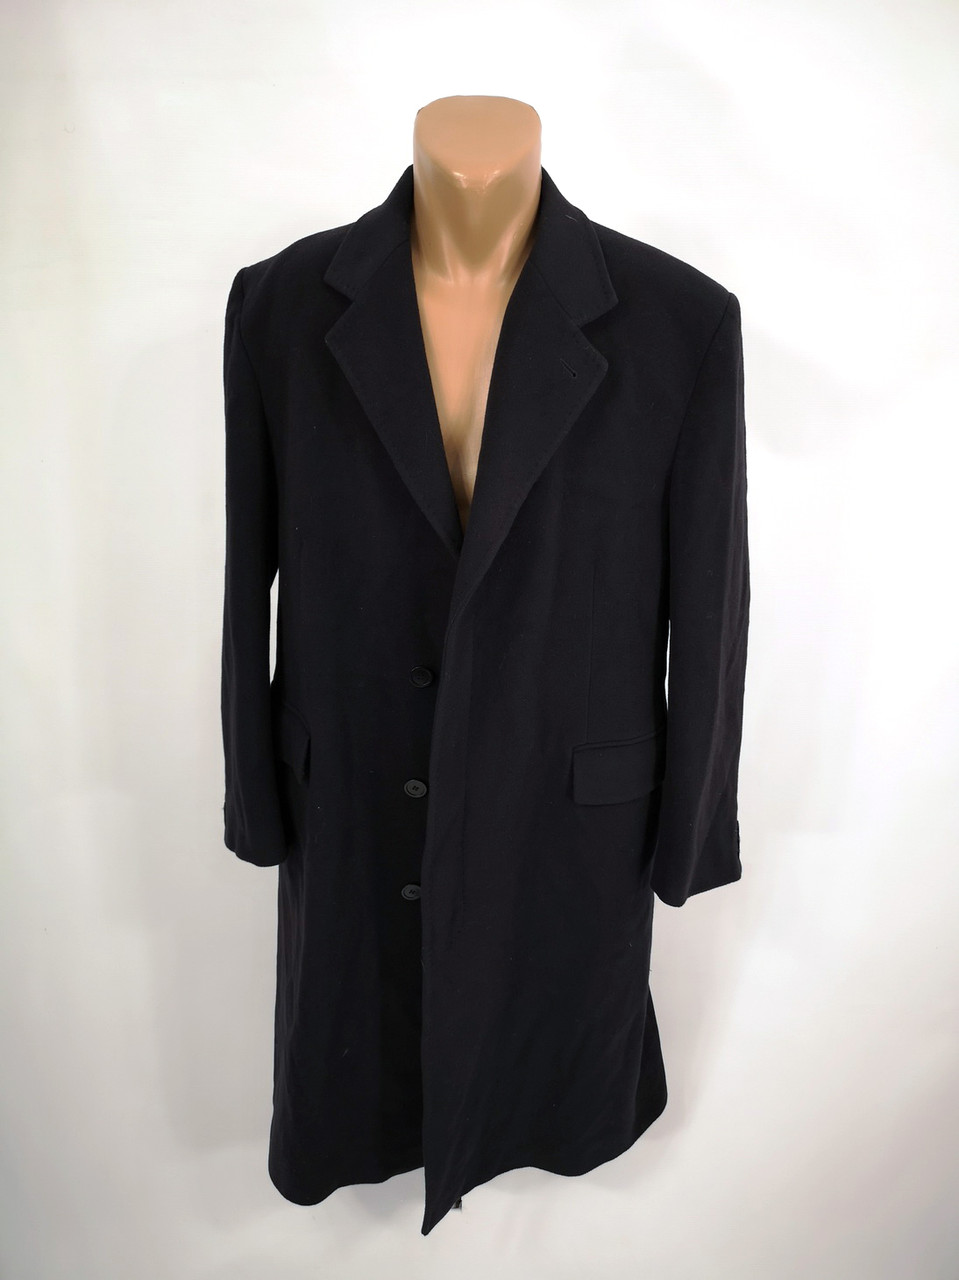 Пальто стильное, теплое, т. синее, Daniel Hetcher, шерсть, Разм 44 (XL